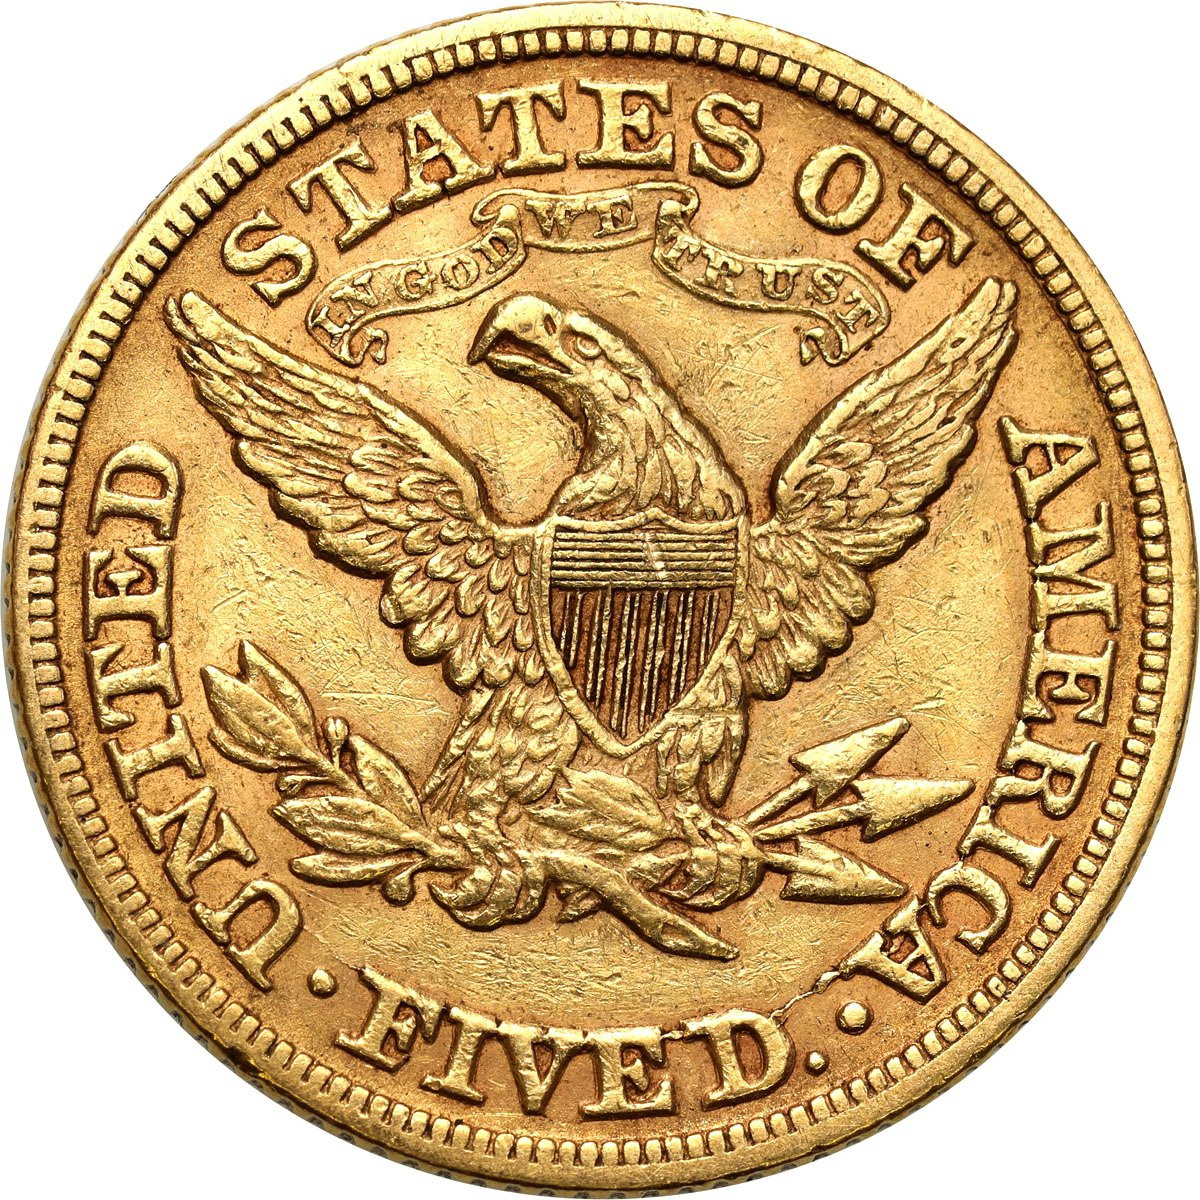 USA 5 dolarów 1880 Filadelfia